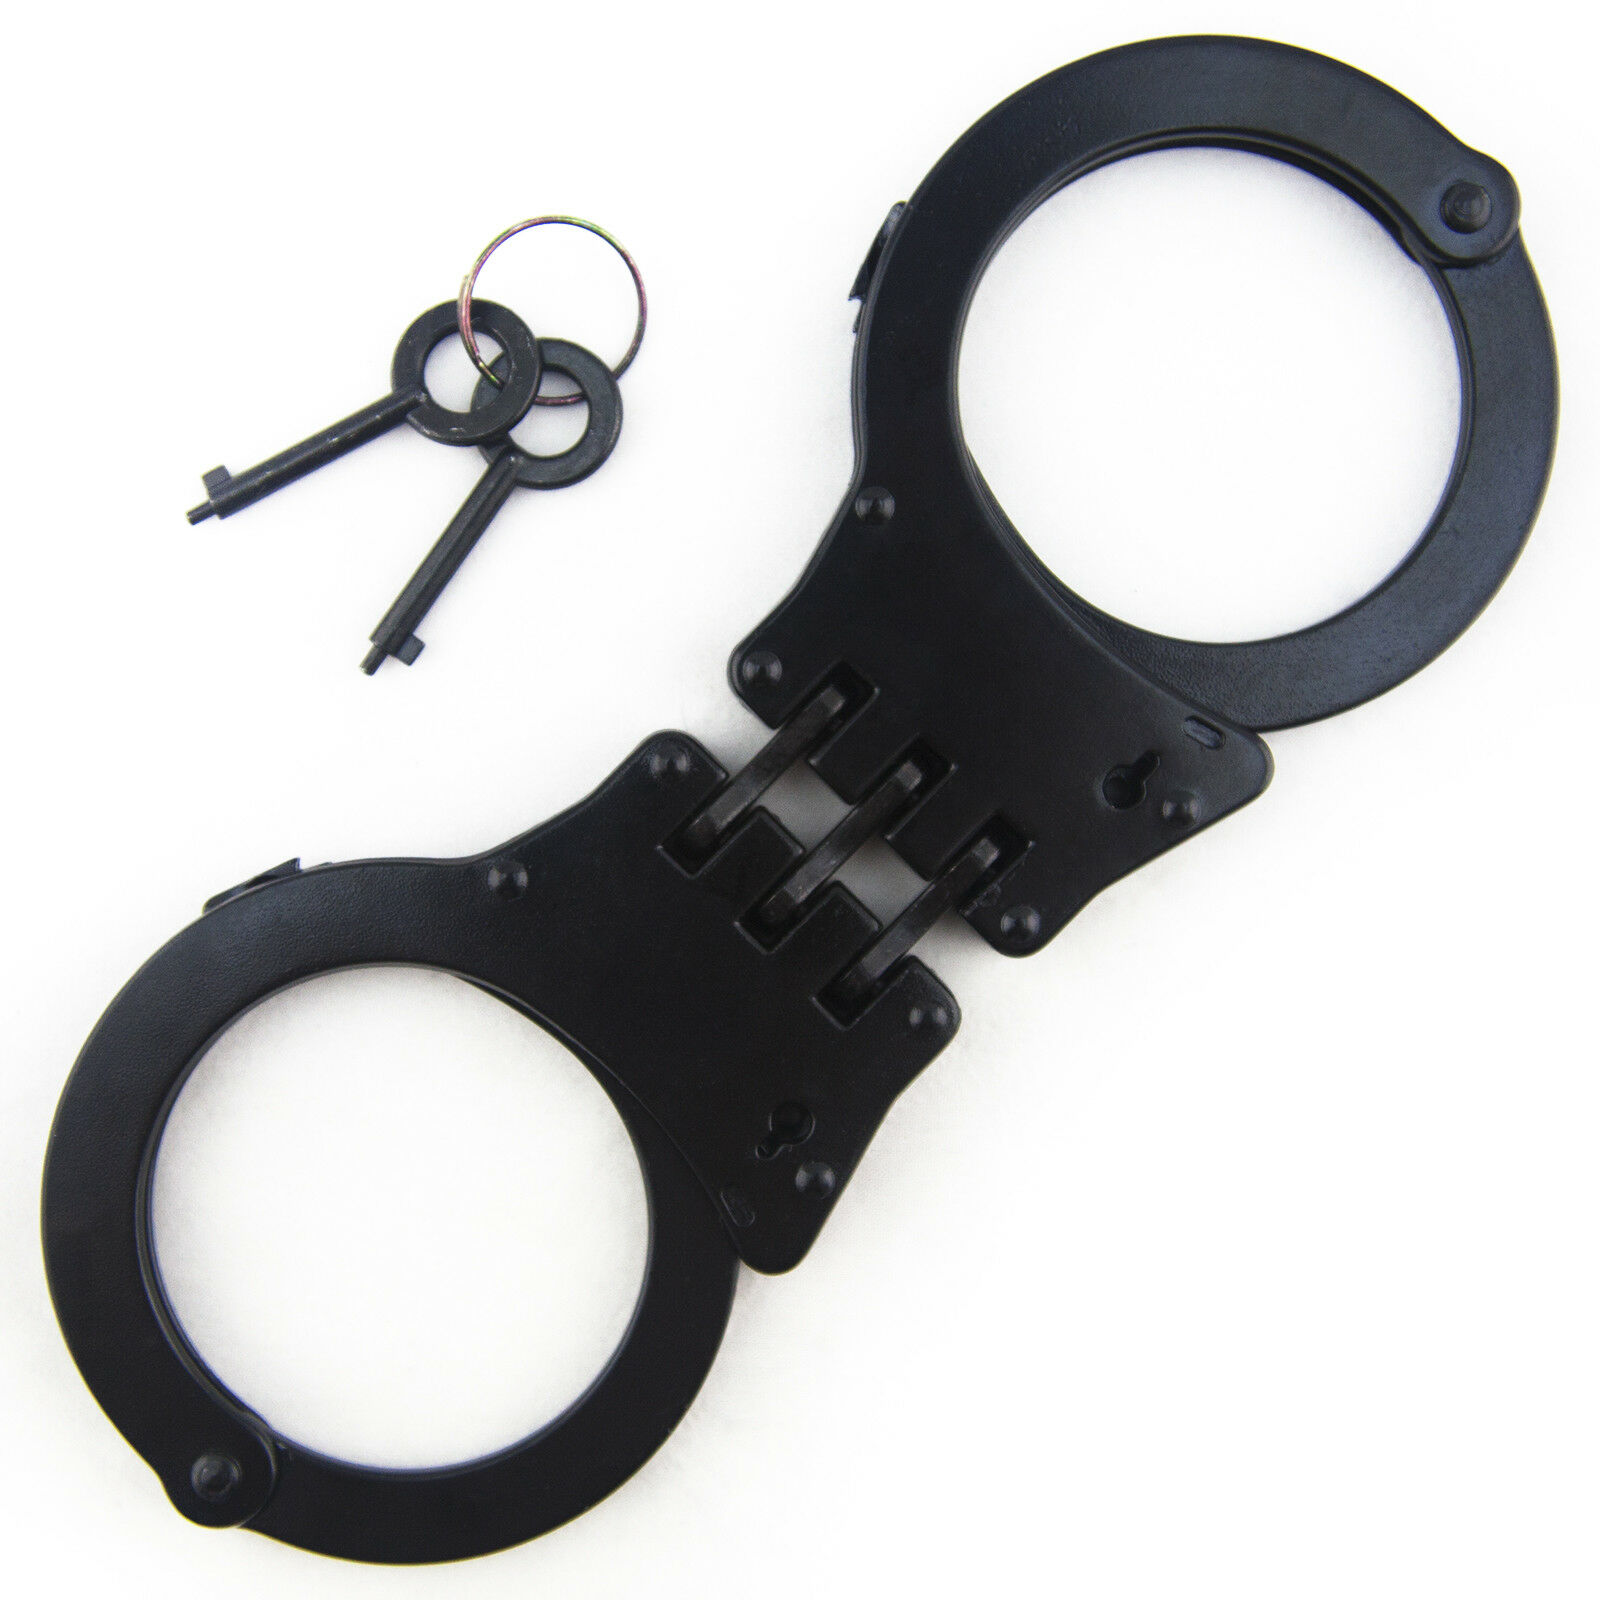 New Black Steel Hinged Double Lock Security Hand Cuffs W/ Keys Heavy Duty